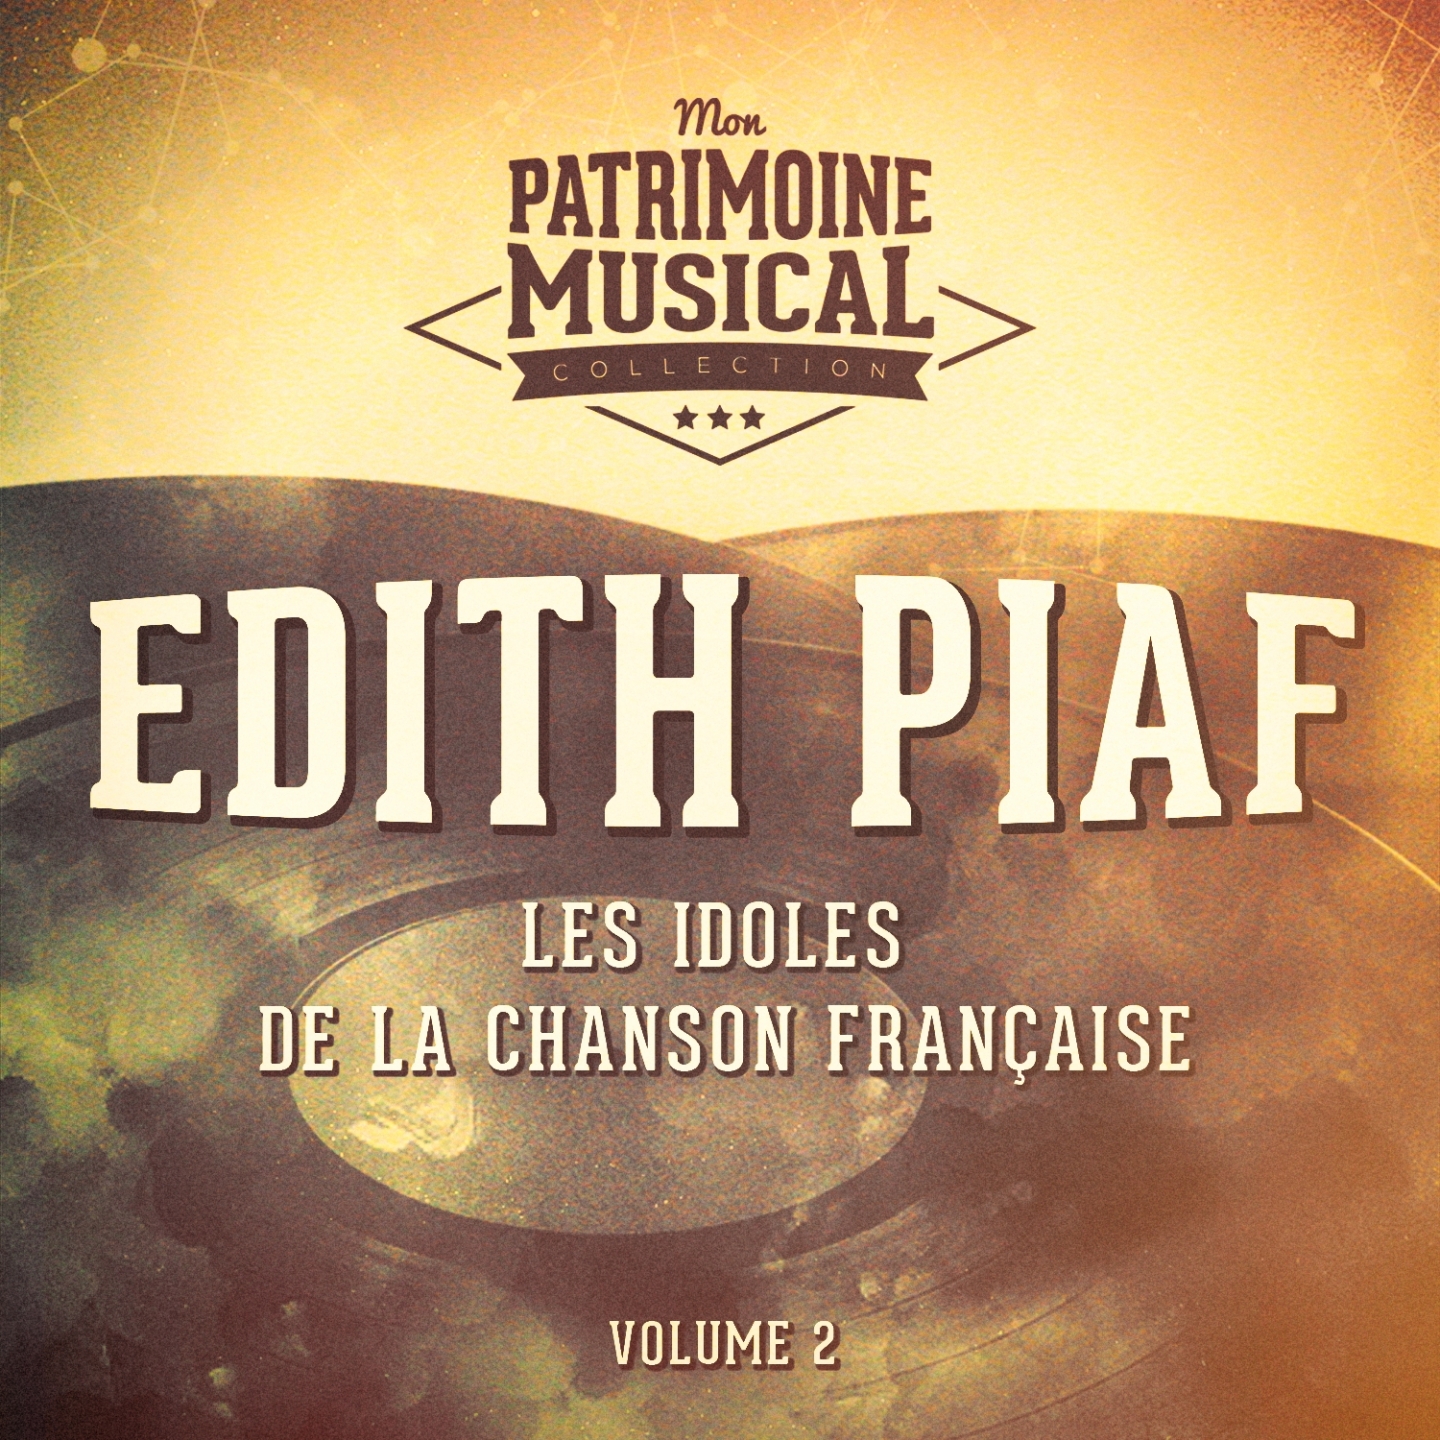 Les idoles de la chanson fran aise : Edith Piaf, Vol. 2